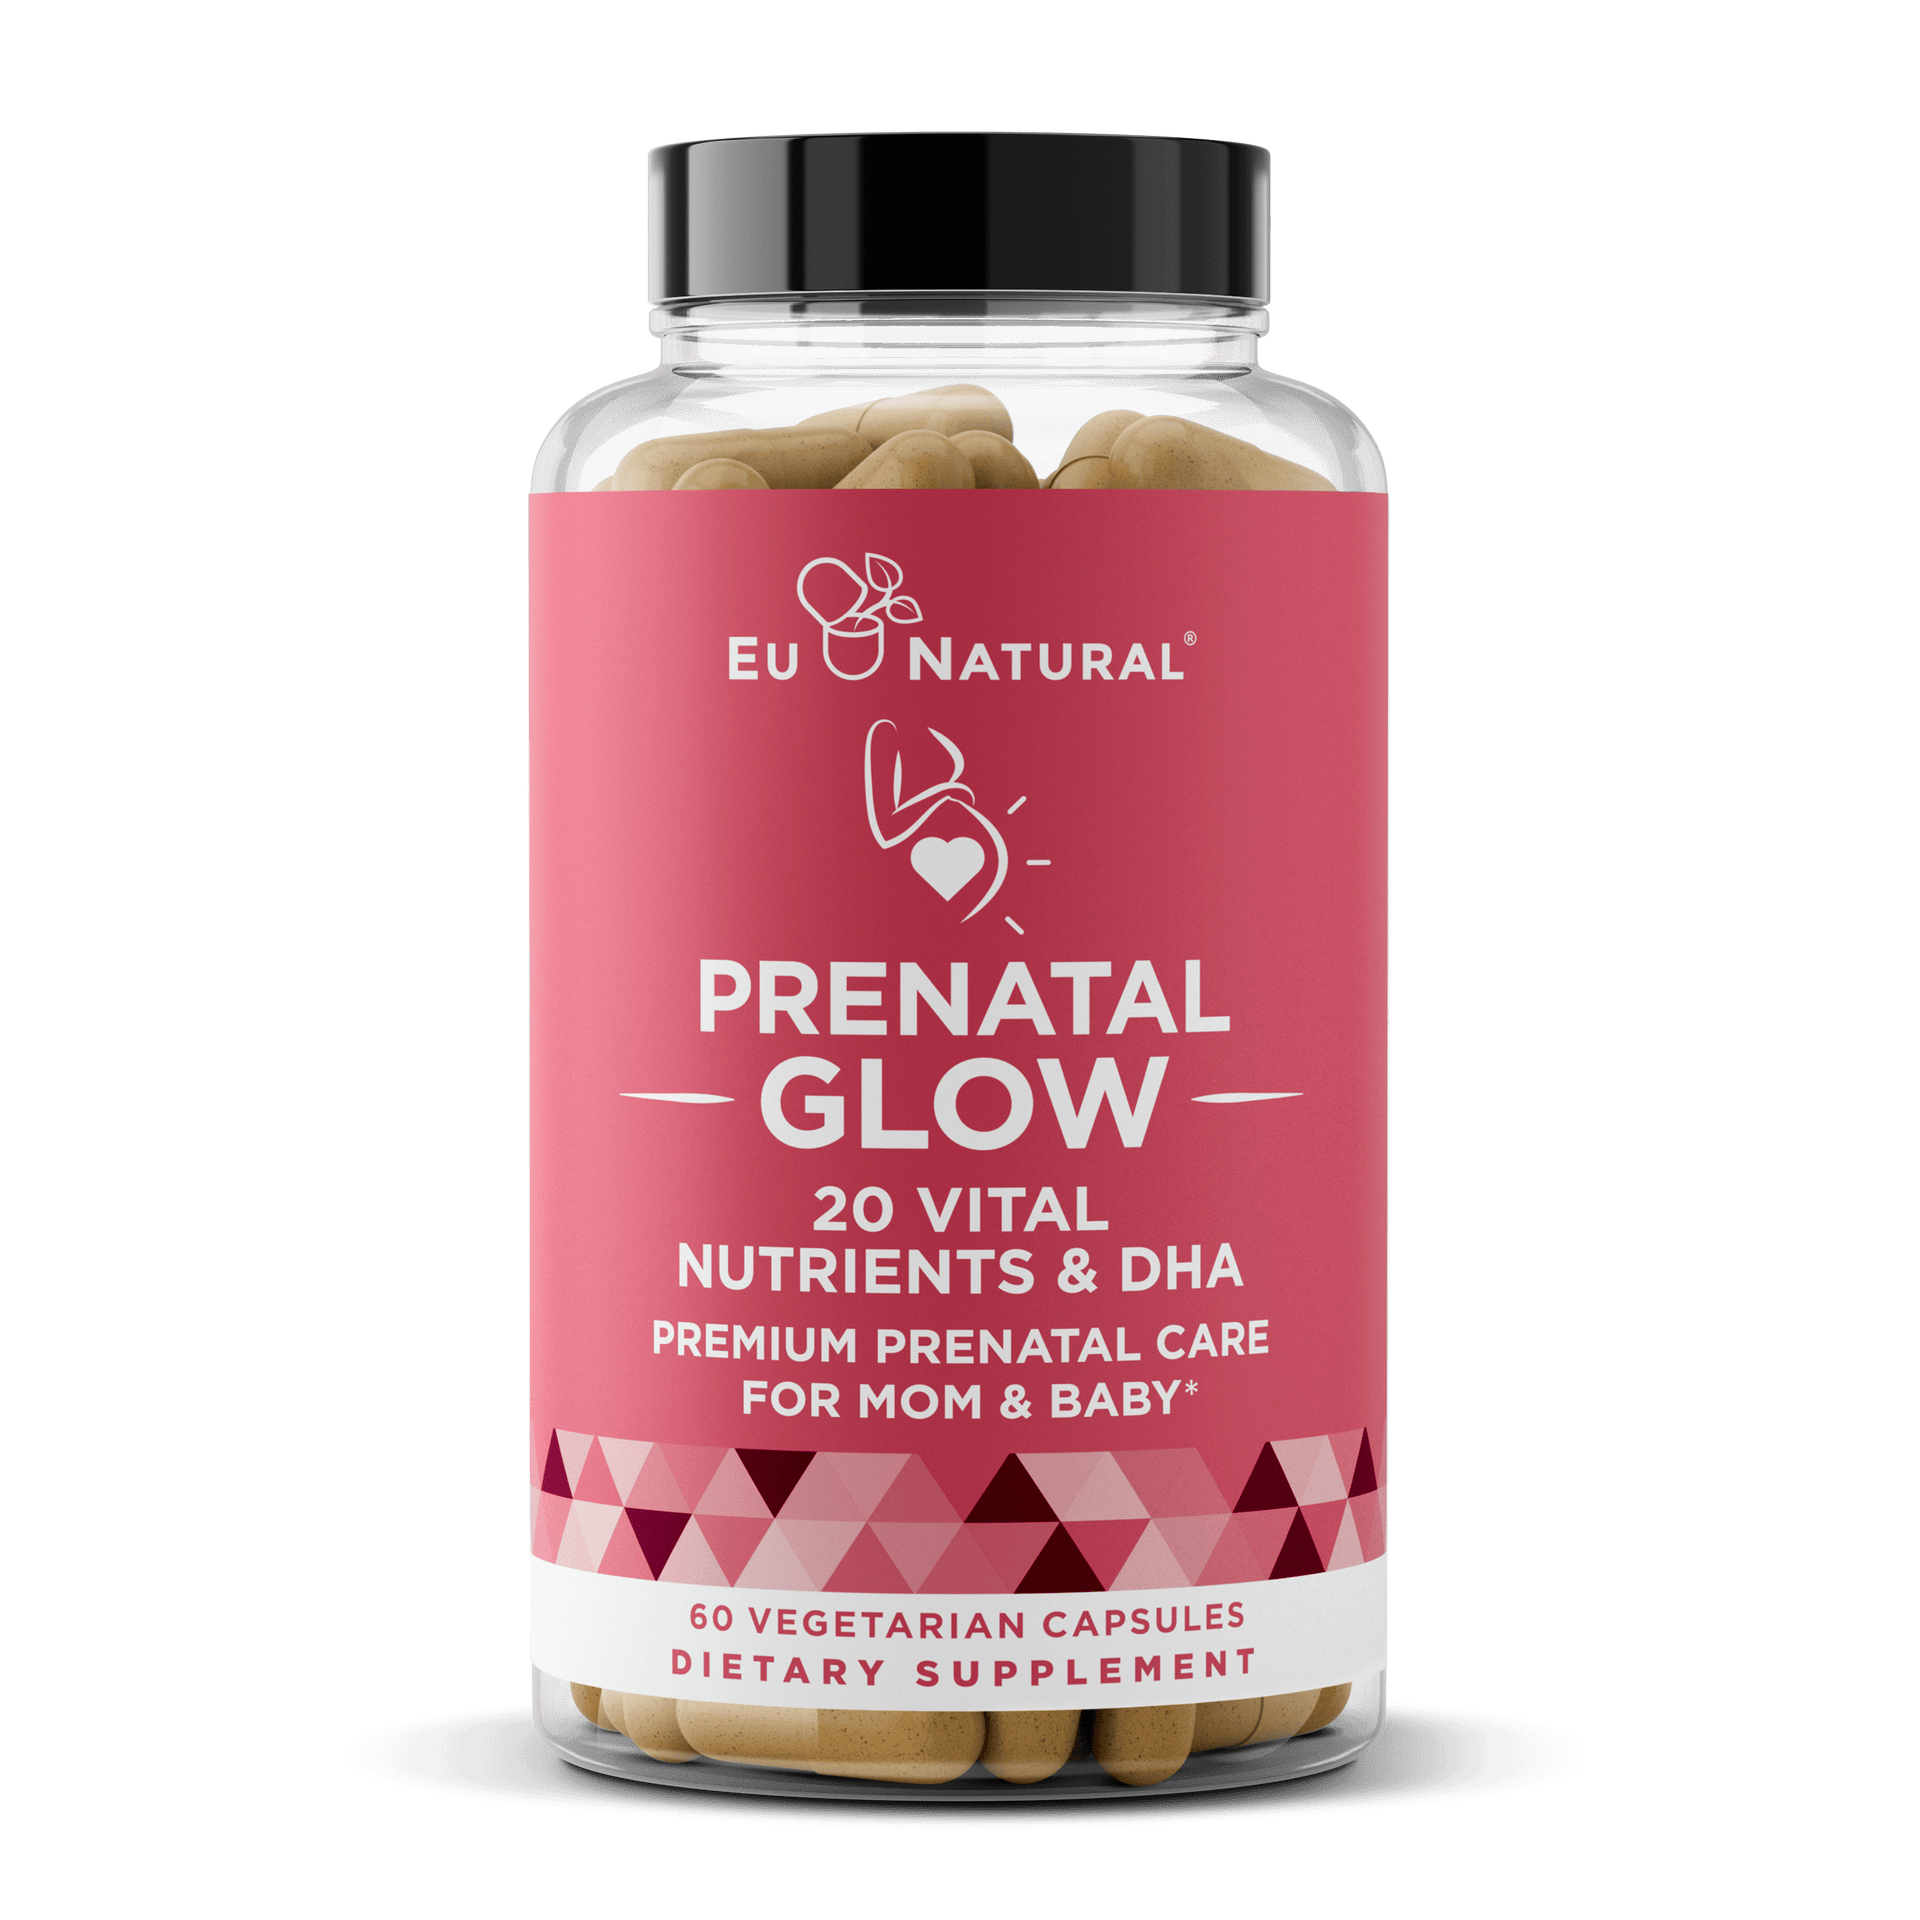 Eu Natural PRENATAL GLOW — The Ultimate Clean & Complete Prenatal